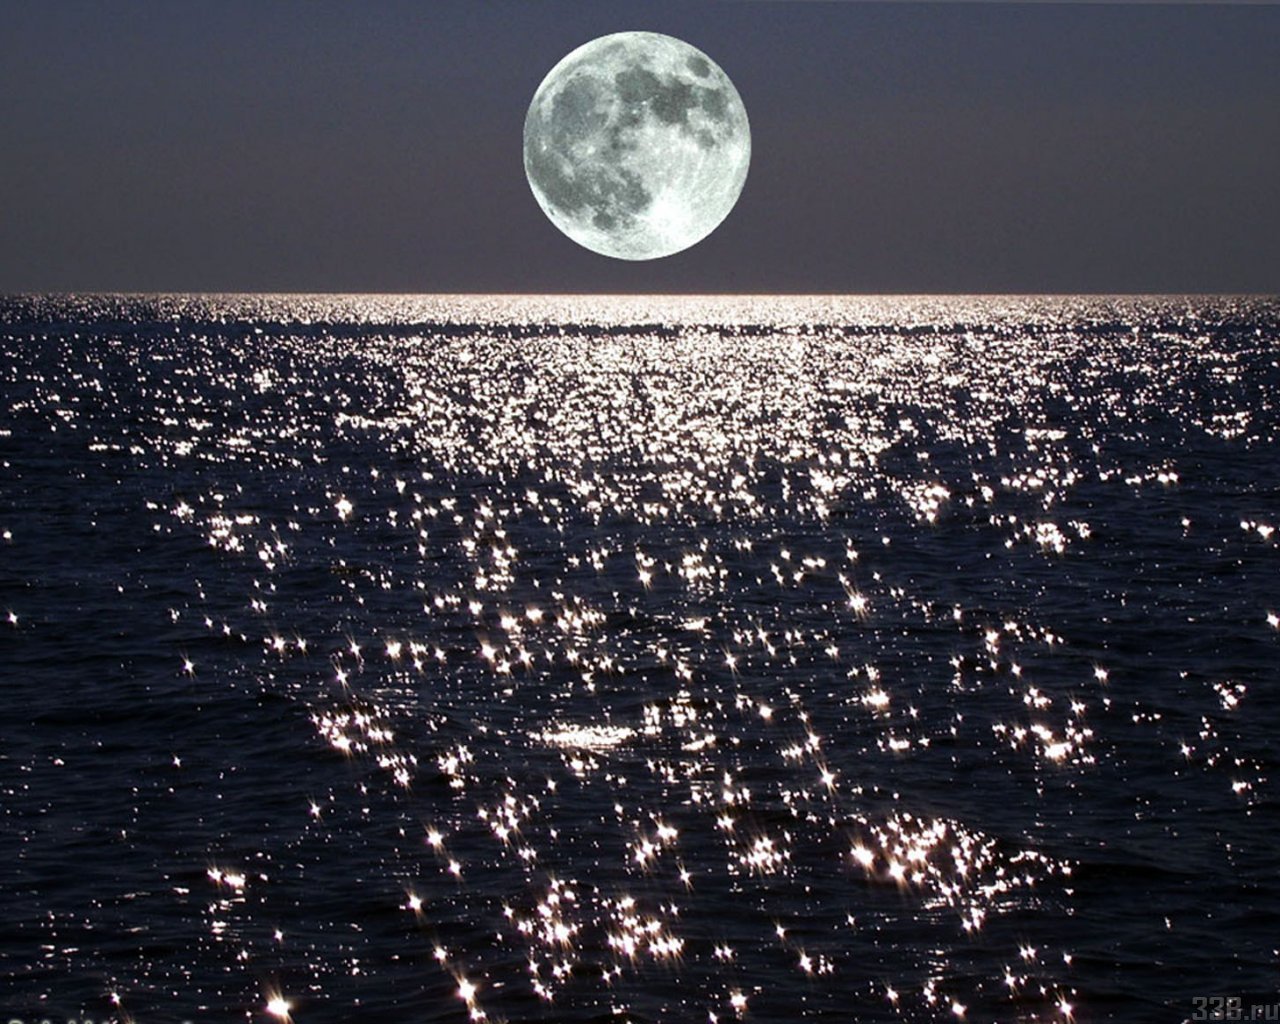 Глубокая тихая вода лакированно блестела словно. Лунный свет Дебюсси. Луна и море.